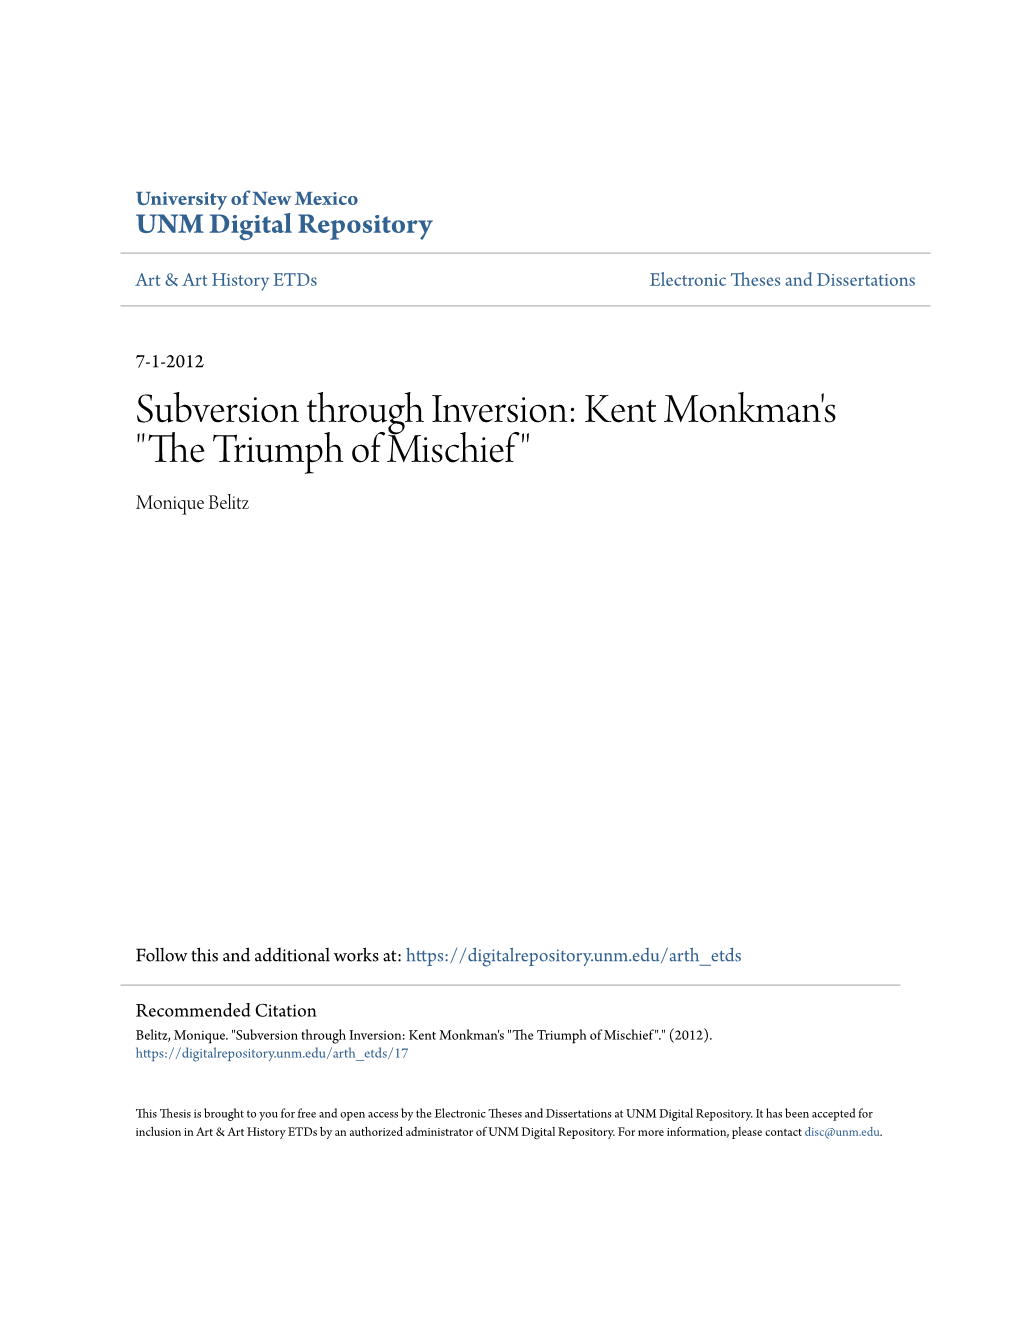 Subversion Through Inversion: Kent Monkman's "The Triumph of Mischief"